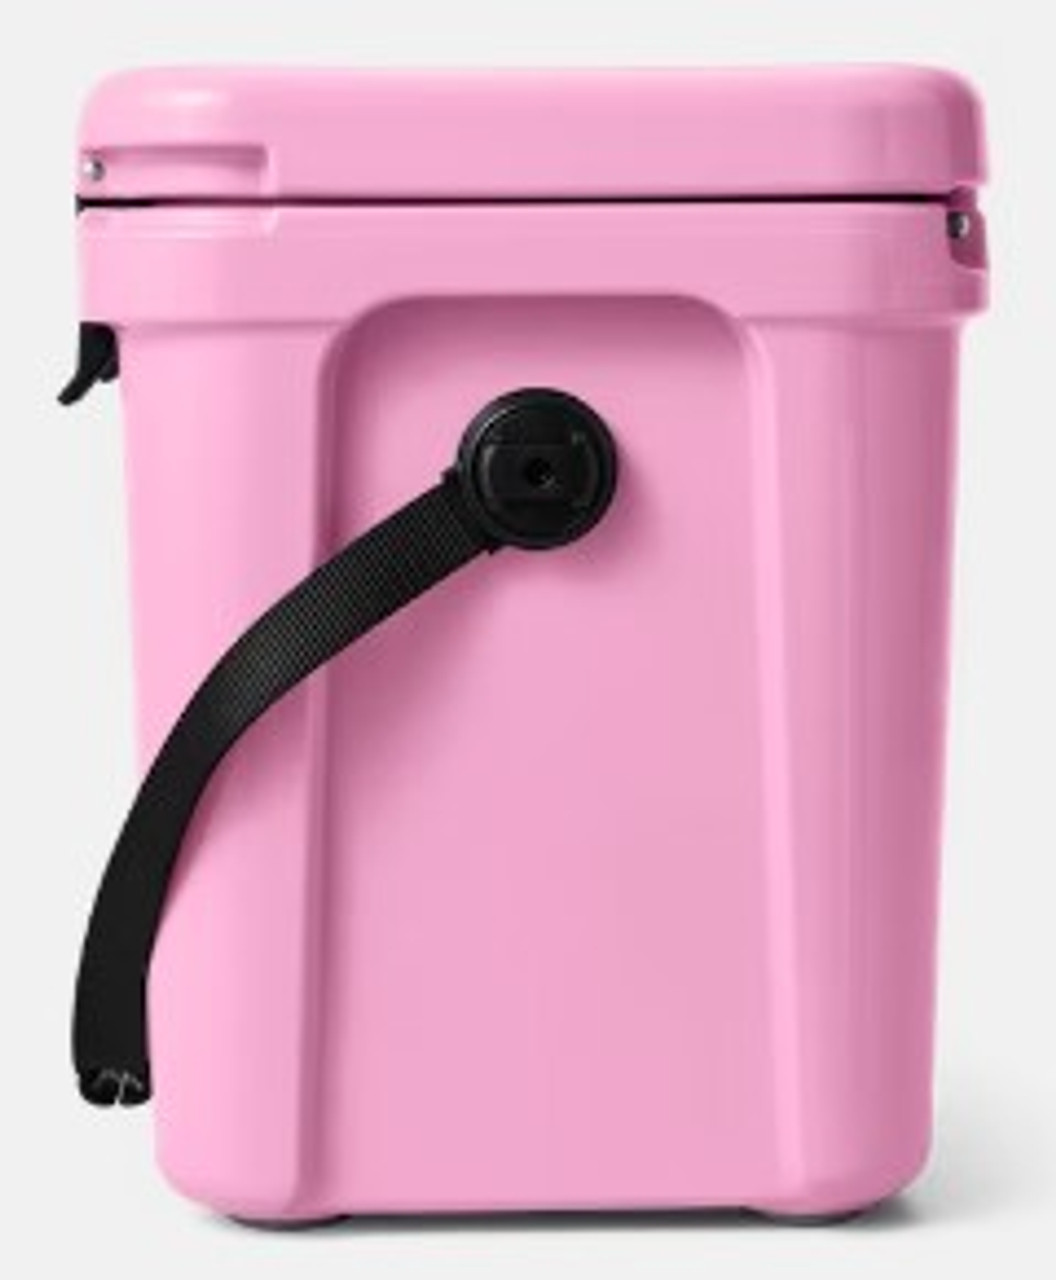 Yeti - Roadie 24 Hard Cooler - Power Pink – Sunset & Co.